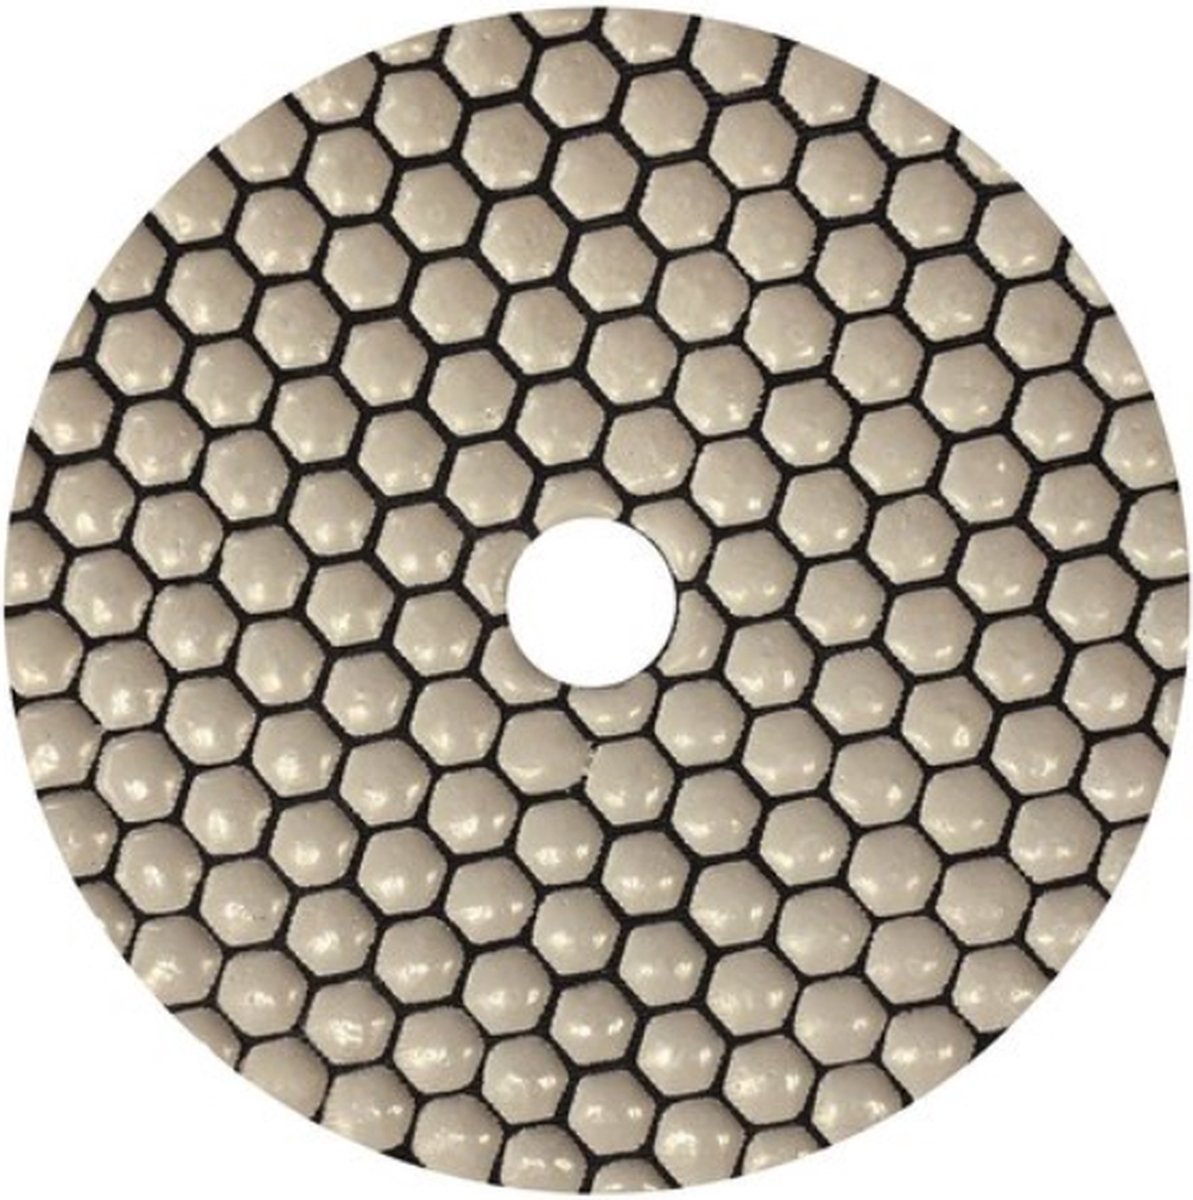 HBM Jeu de 6 disques de polissage diamantés de 125 mm avec tampon